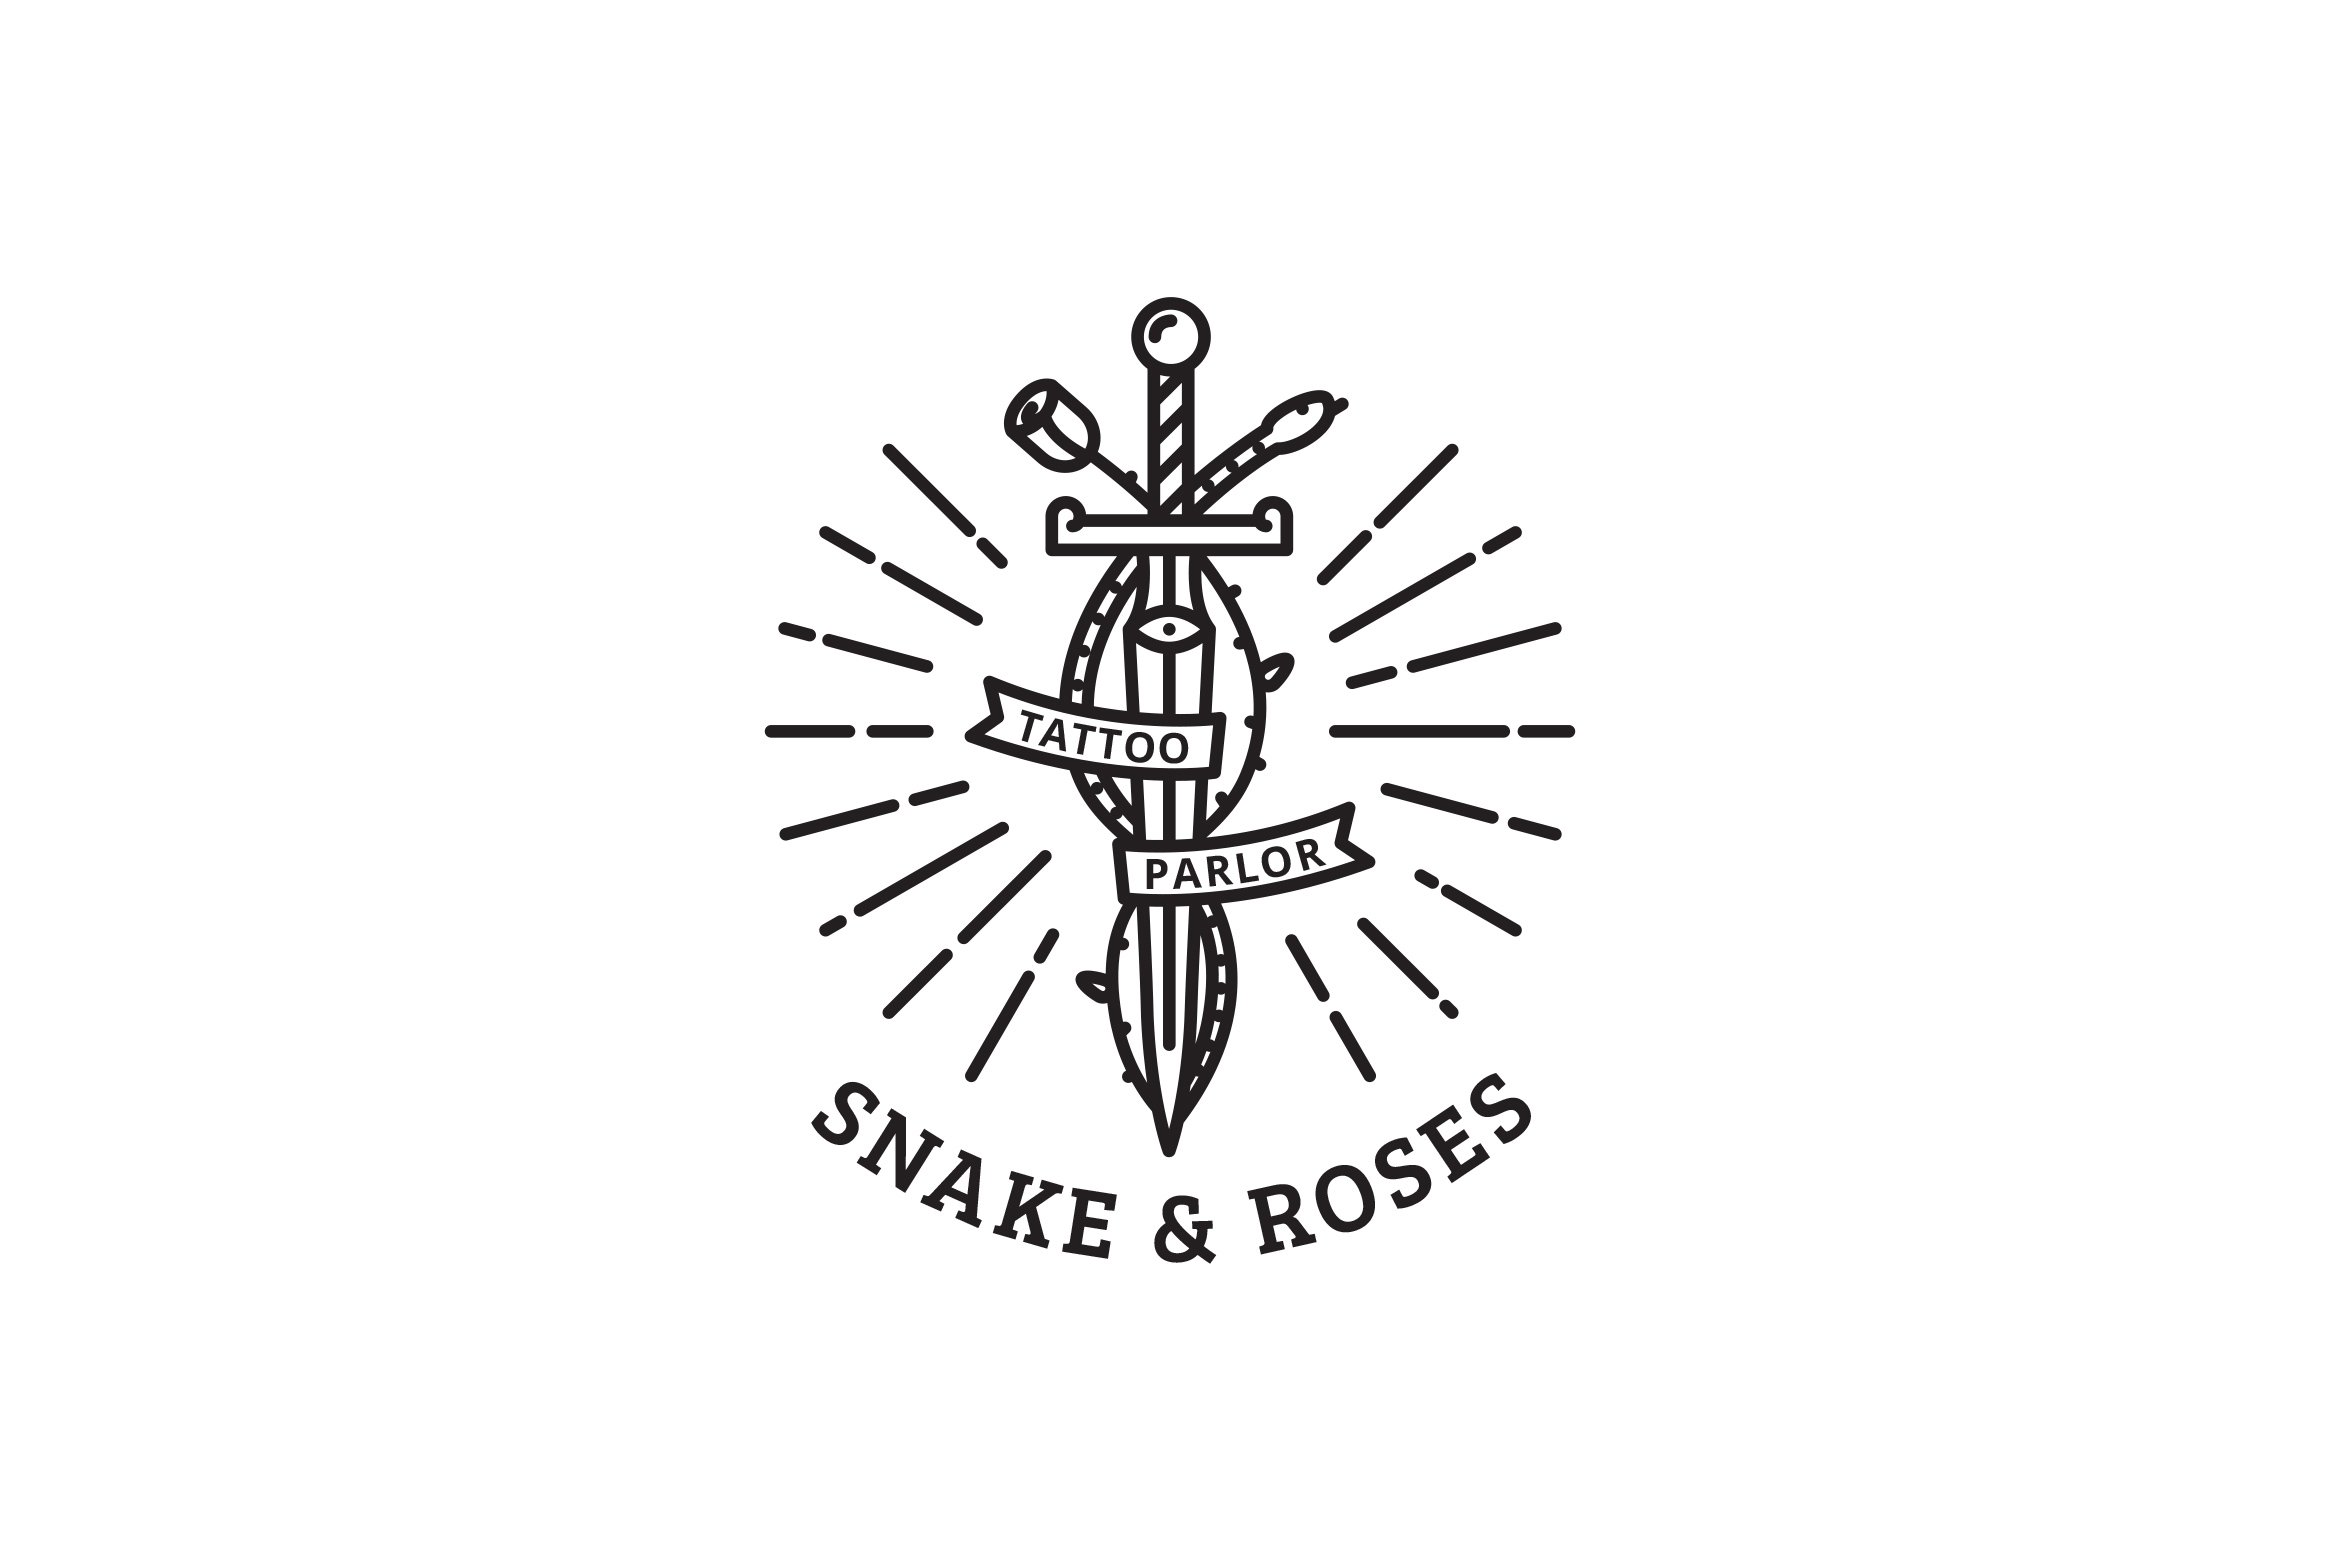 Snake & Roses Logo cover image.